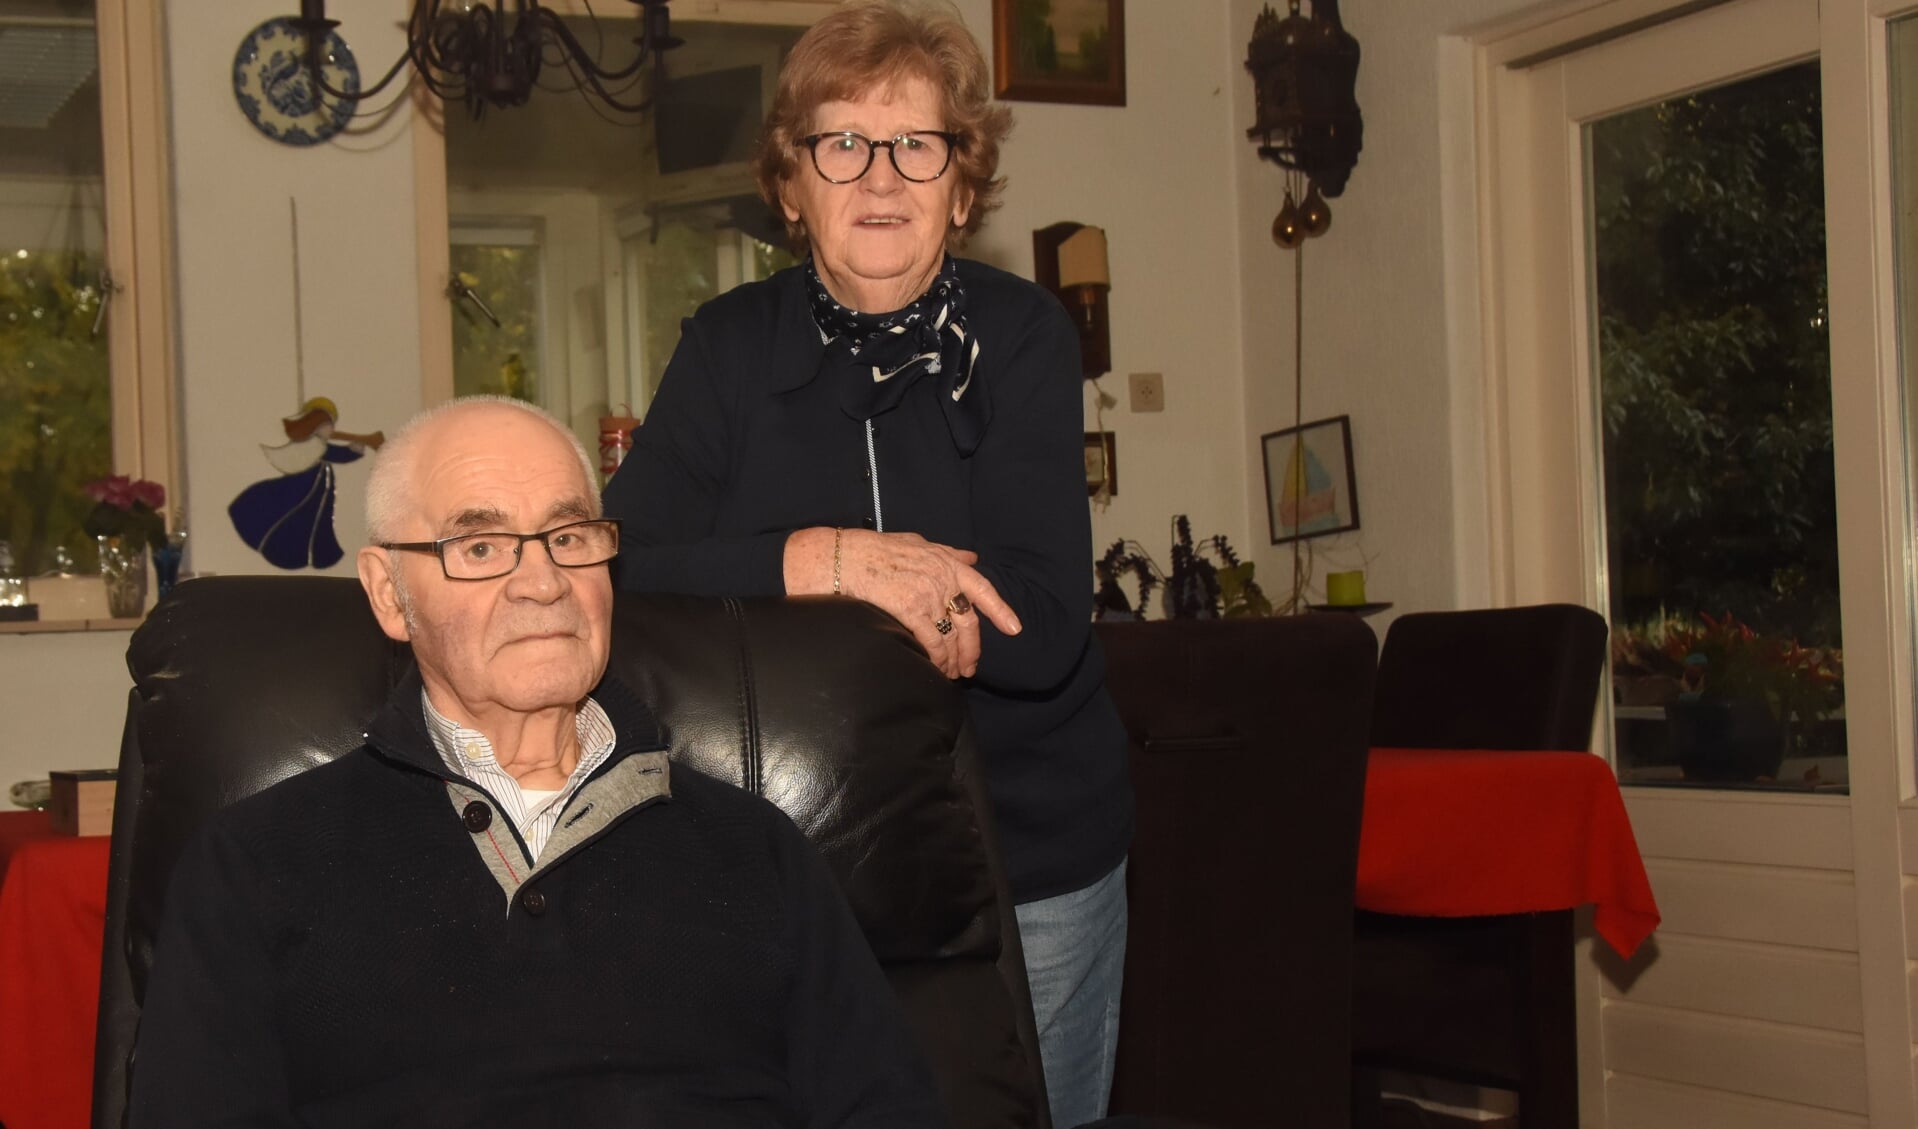 Peter en Liesje van der Linden - Seerden zijn op 16 november 60 jaar getrouwd